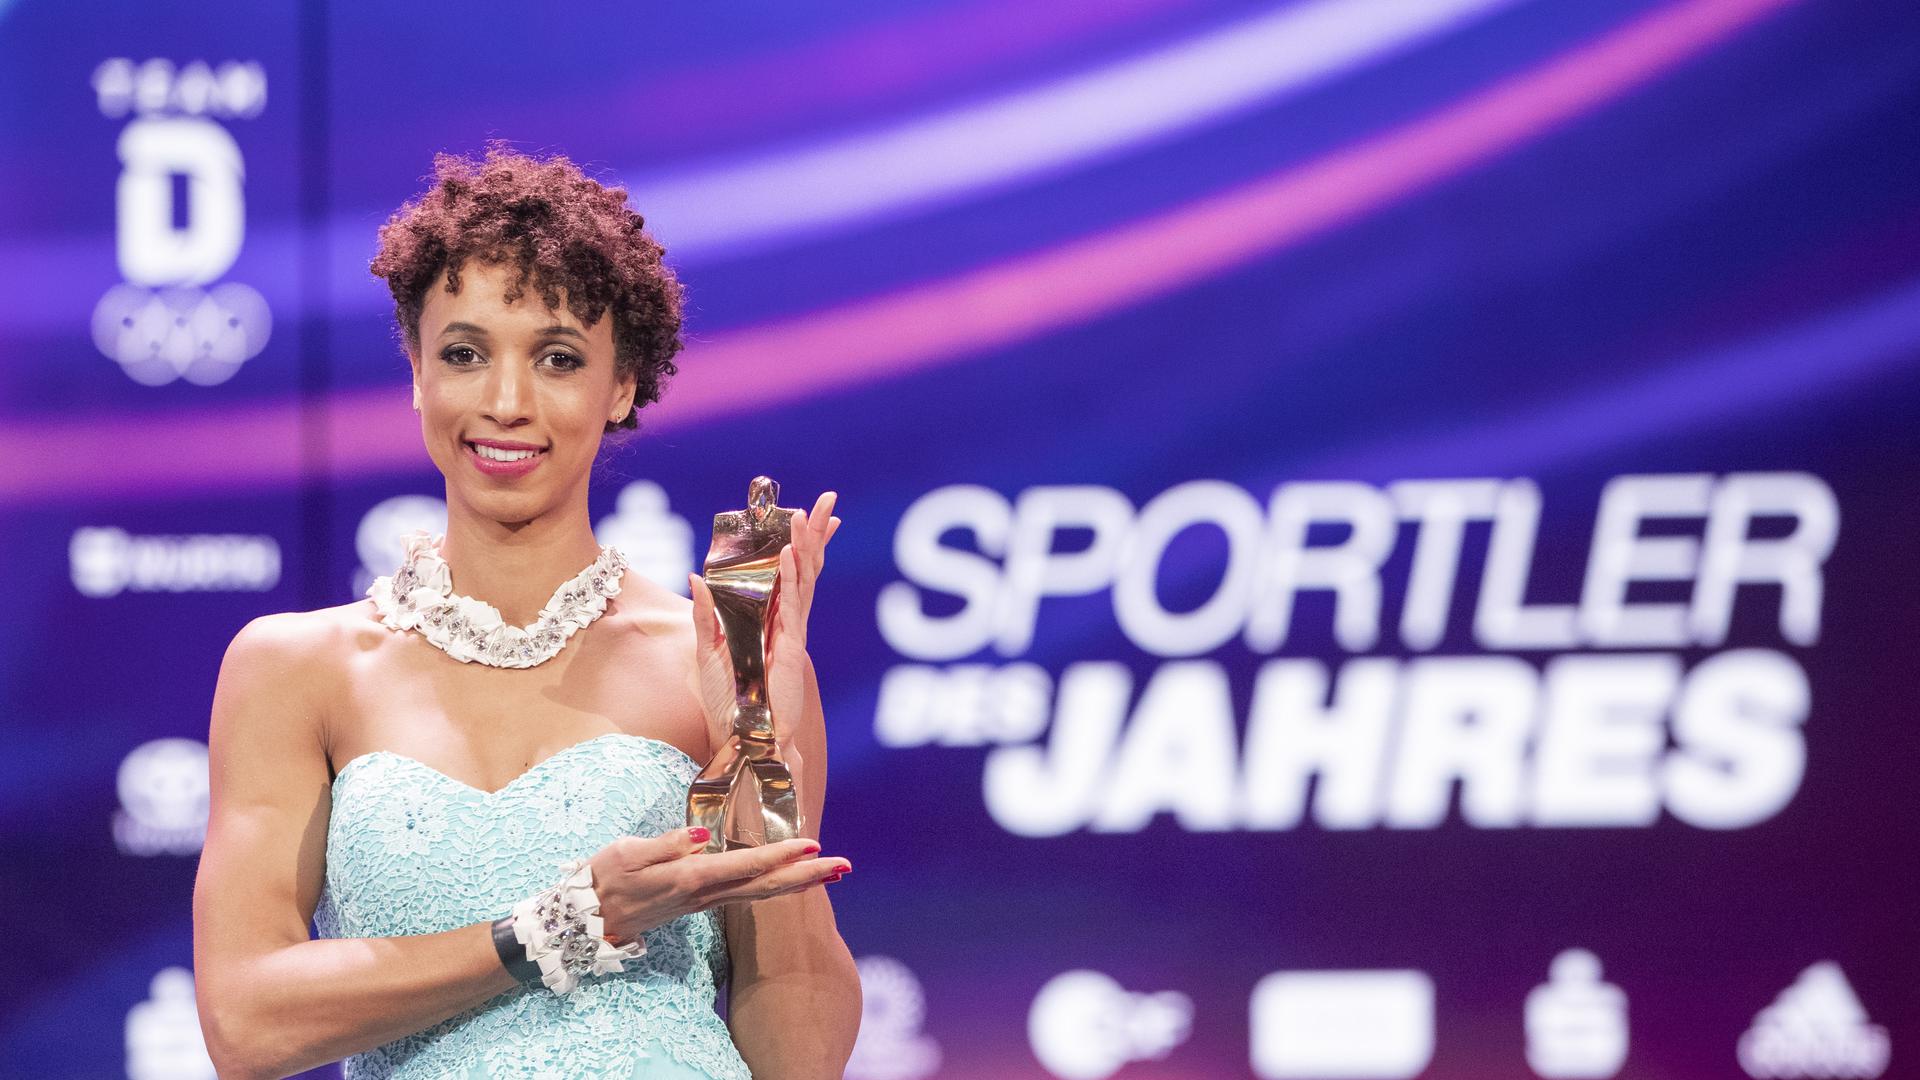 Leichtathletin Malaika Mihambo steht nach der Ehrung der «Sportler des Jahres 2020» auf der Bühne und hat die Trophäe in der Hand. Weitspringerin Mihambo wurde als Sportlerin des Jahres geehrt. +++ dpa-Bildfunk +++